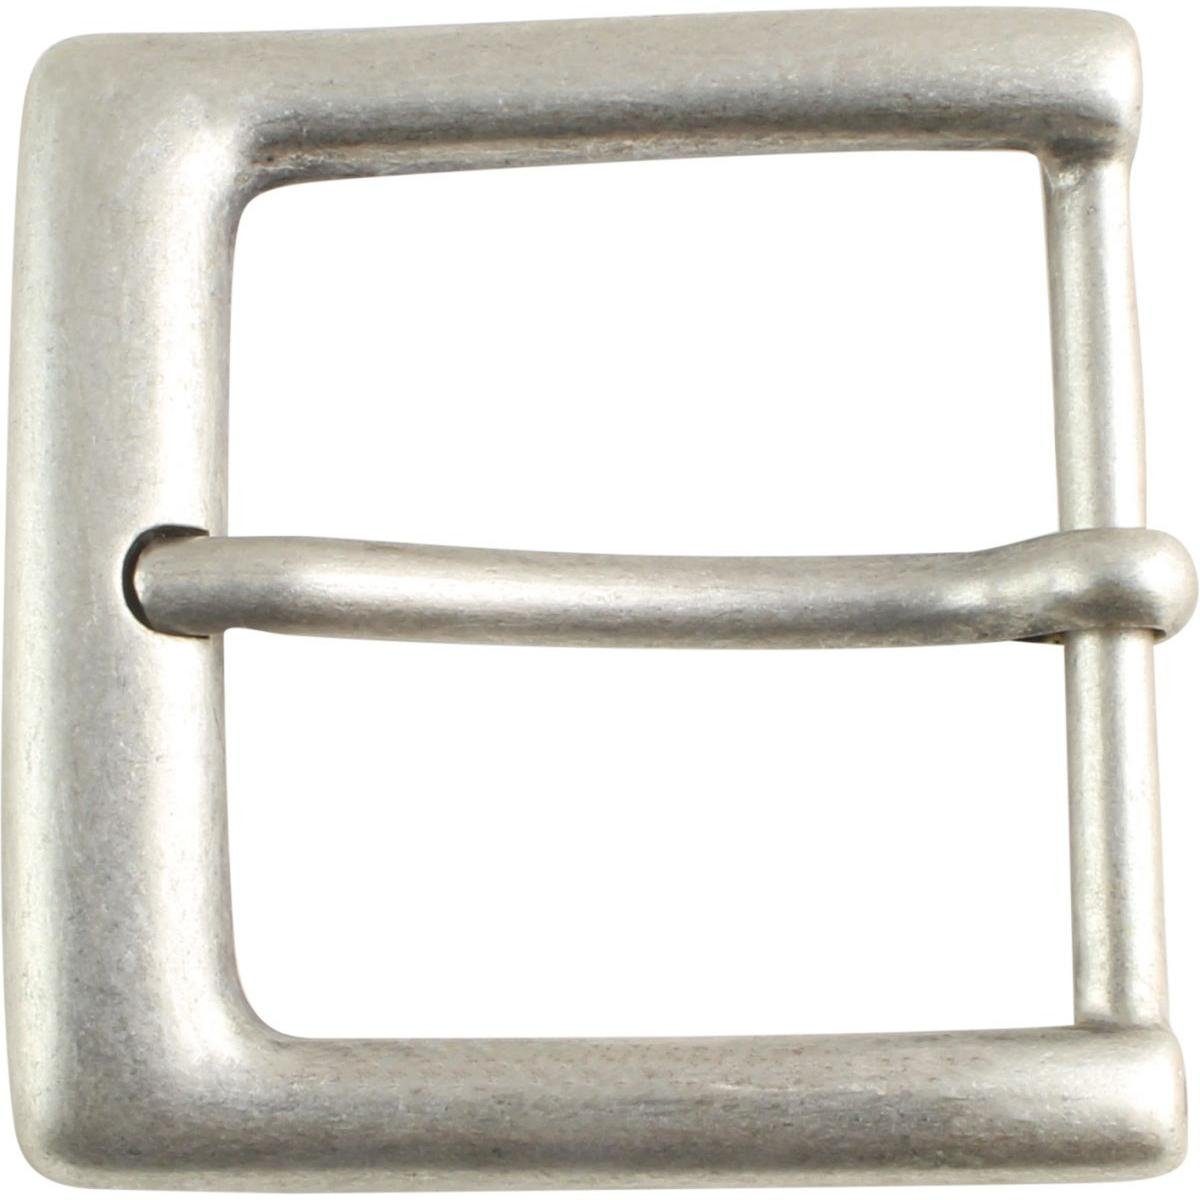 BELTINGER Gürtelschnalle 5,0 cm - Gürtelschließe 50mm - Dorn-Schließe - Für Gürtel bis zu 5cm B